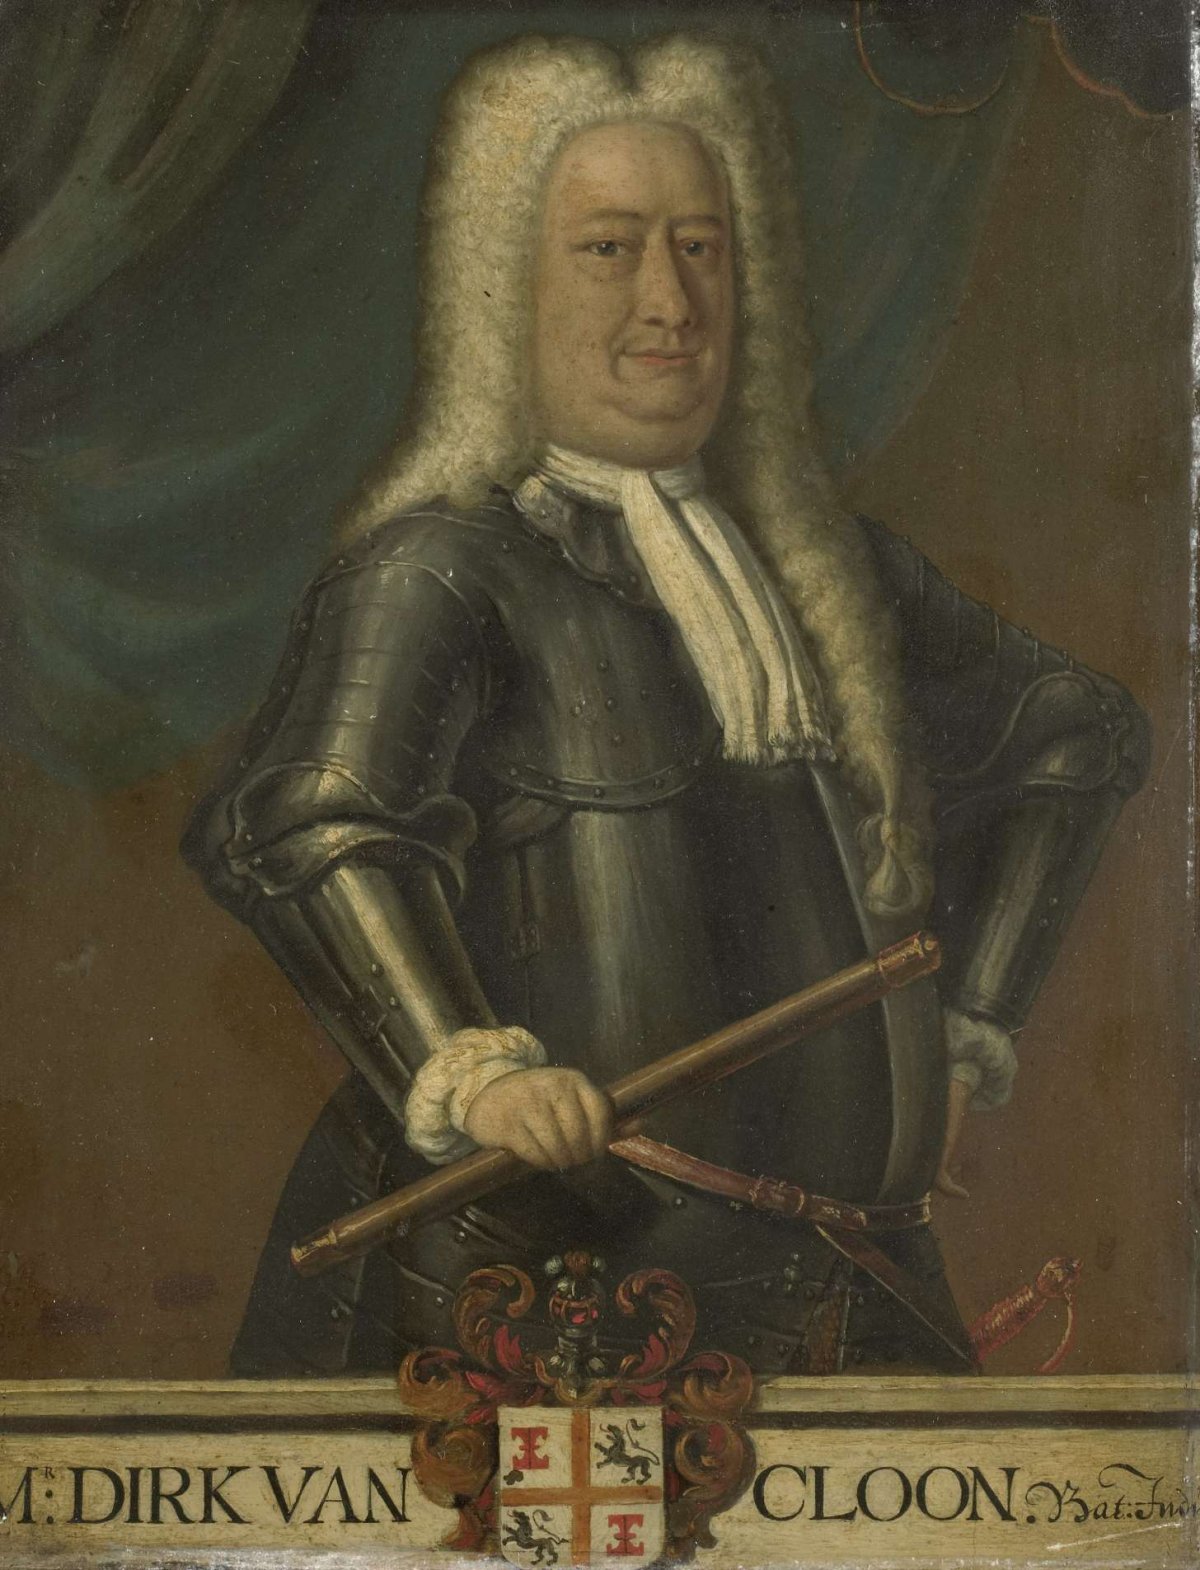 Portrait of Dirk van Cloon, Governor-General of the Dutch East Indies, Hendrik van den Bosch, 1750 - 1799